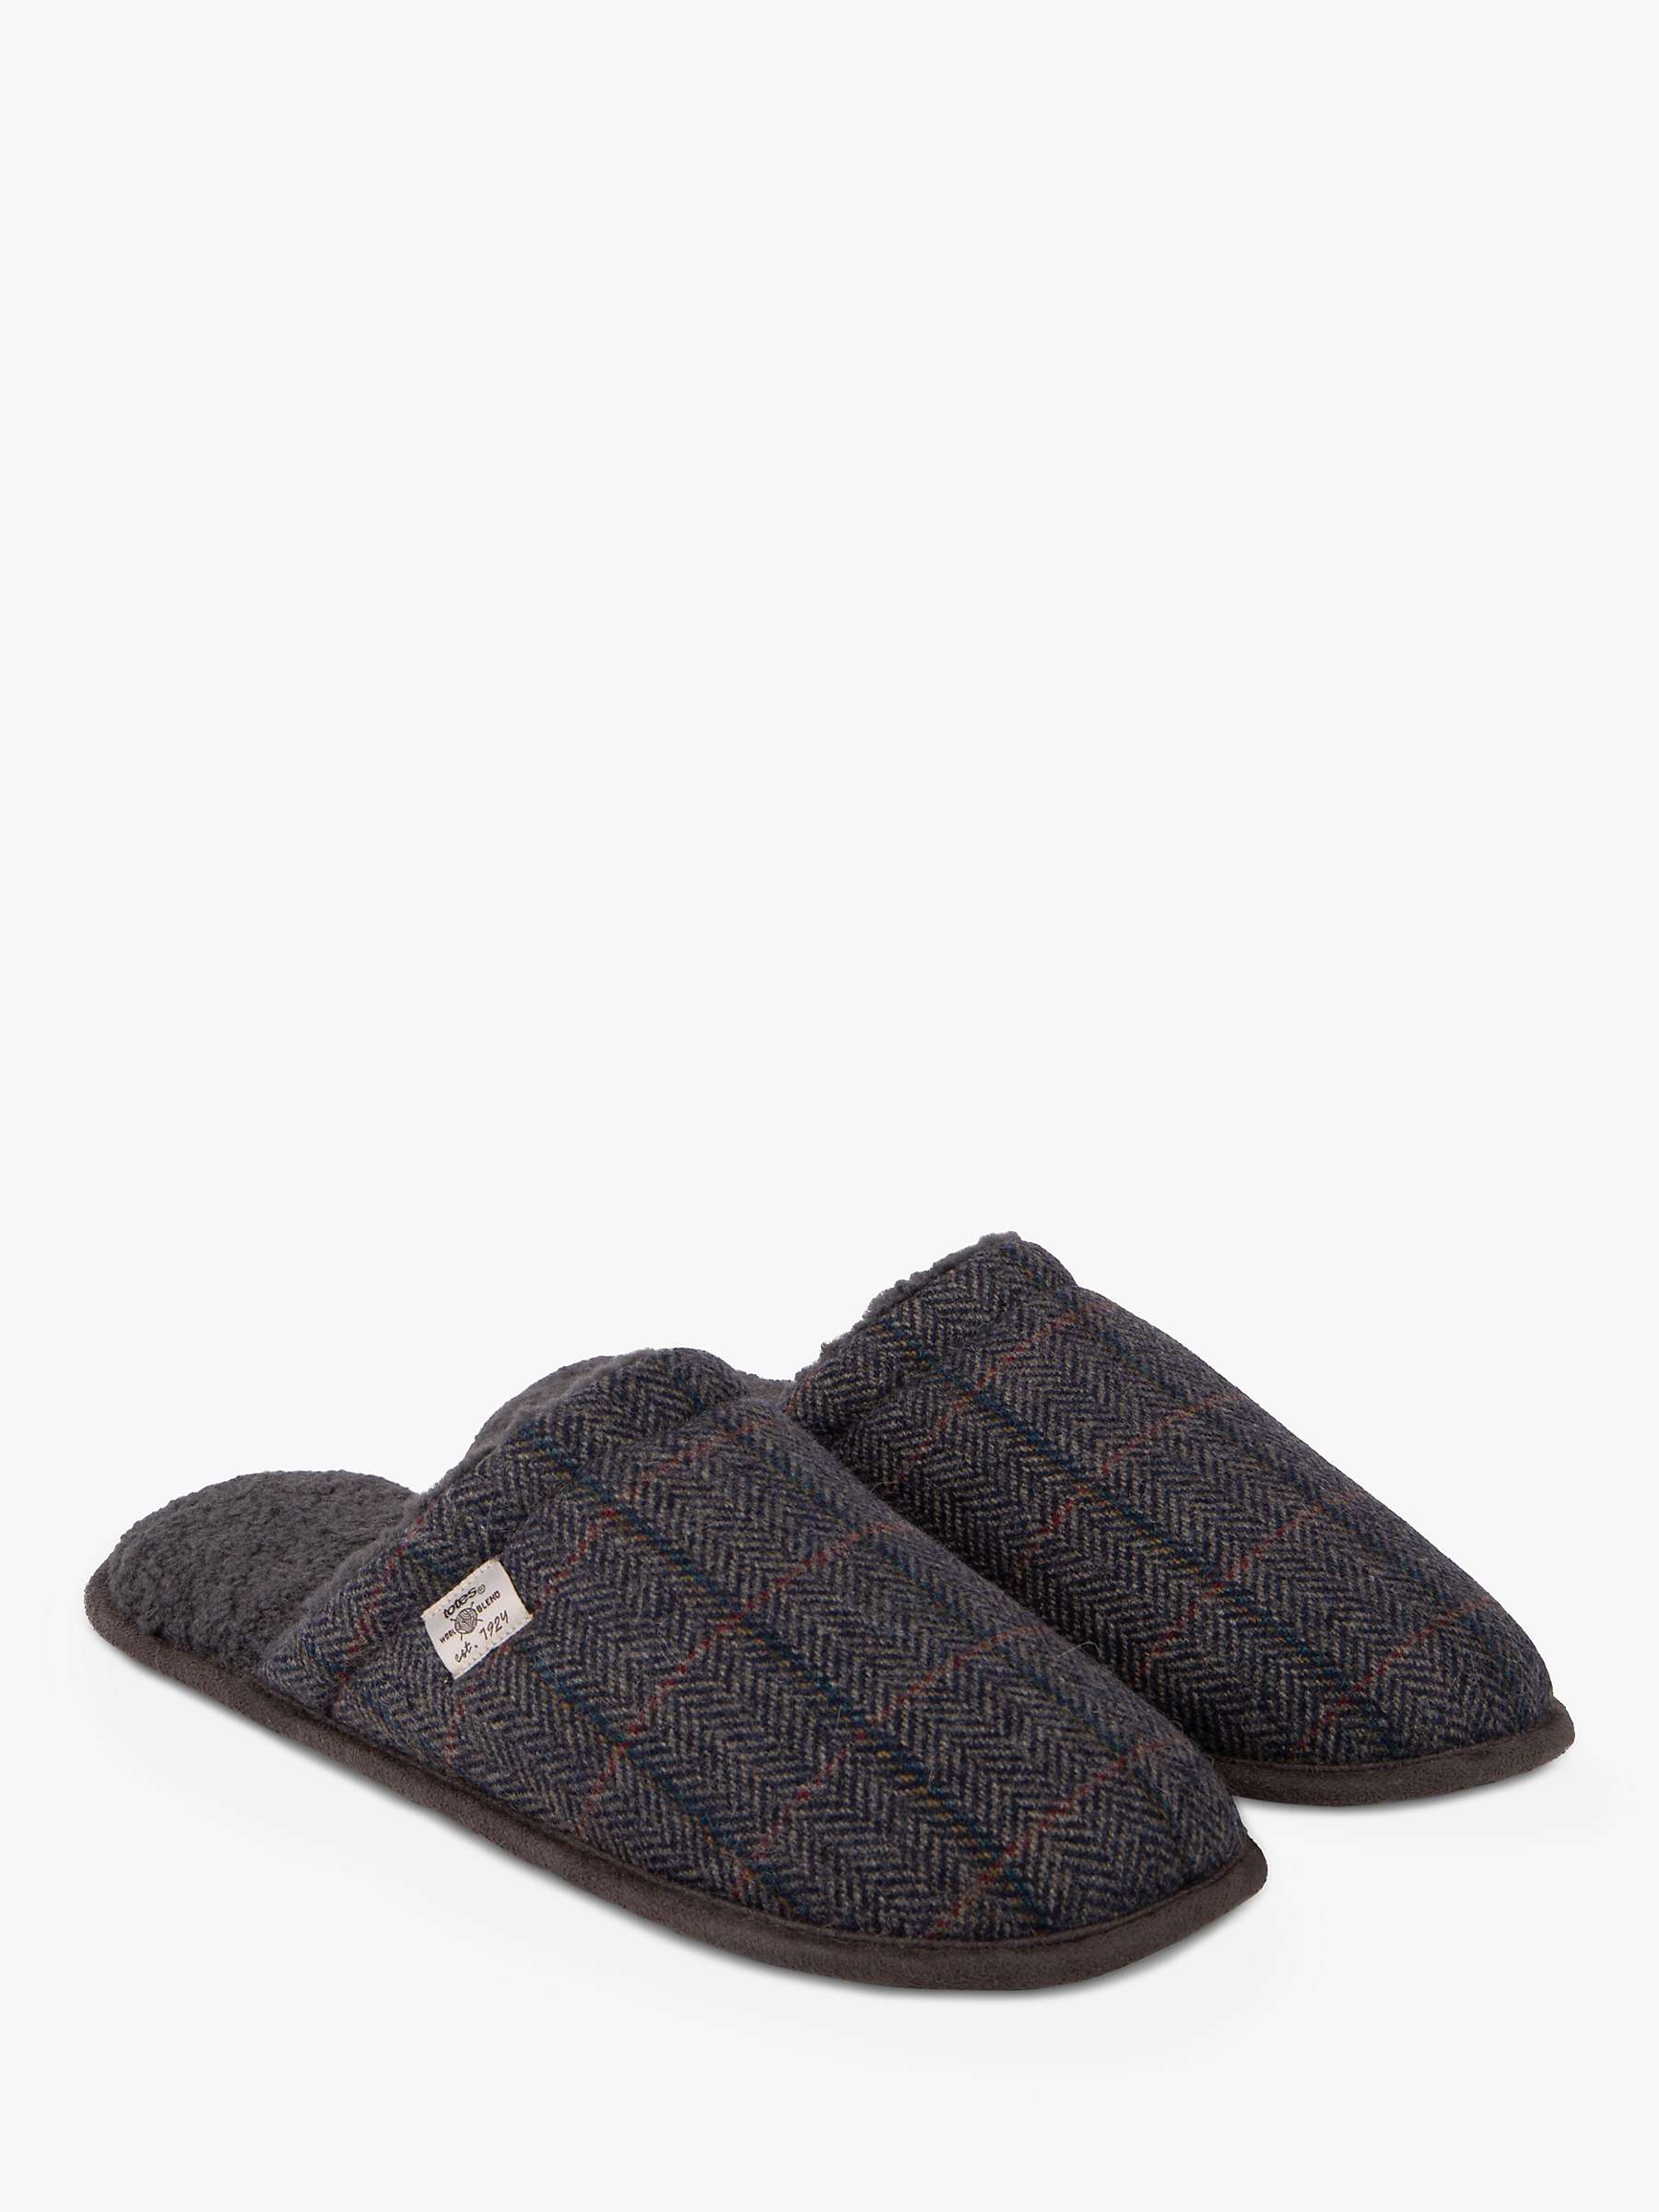 Buy totes Herringbone Mule Style Wool Blend Slippers, Navy/Multi Online at johnlewis.com